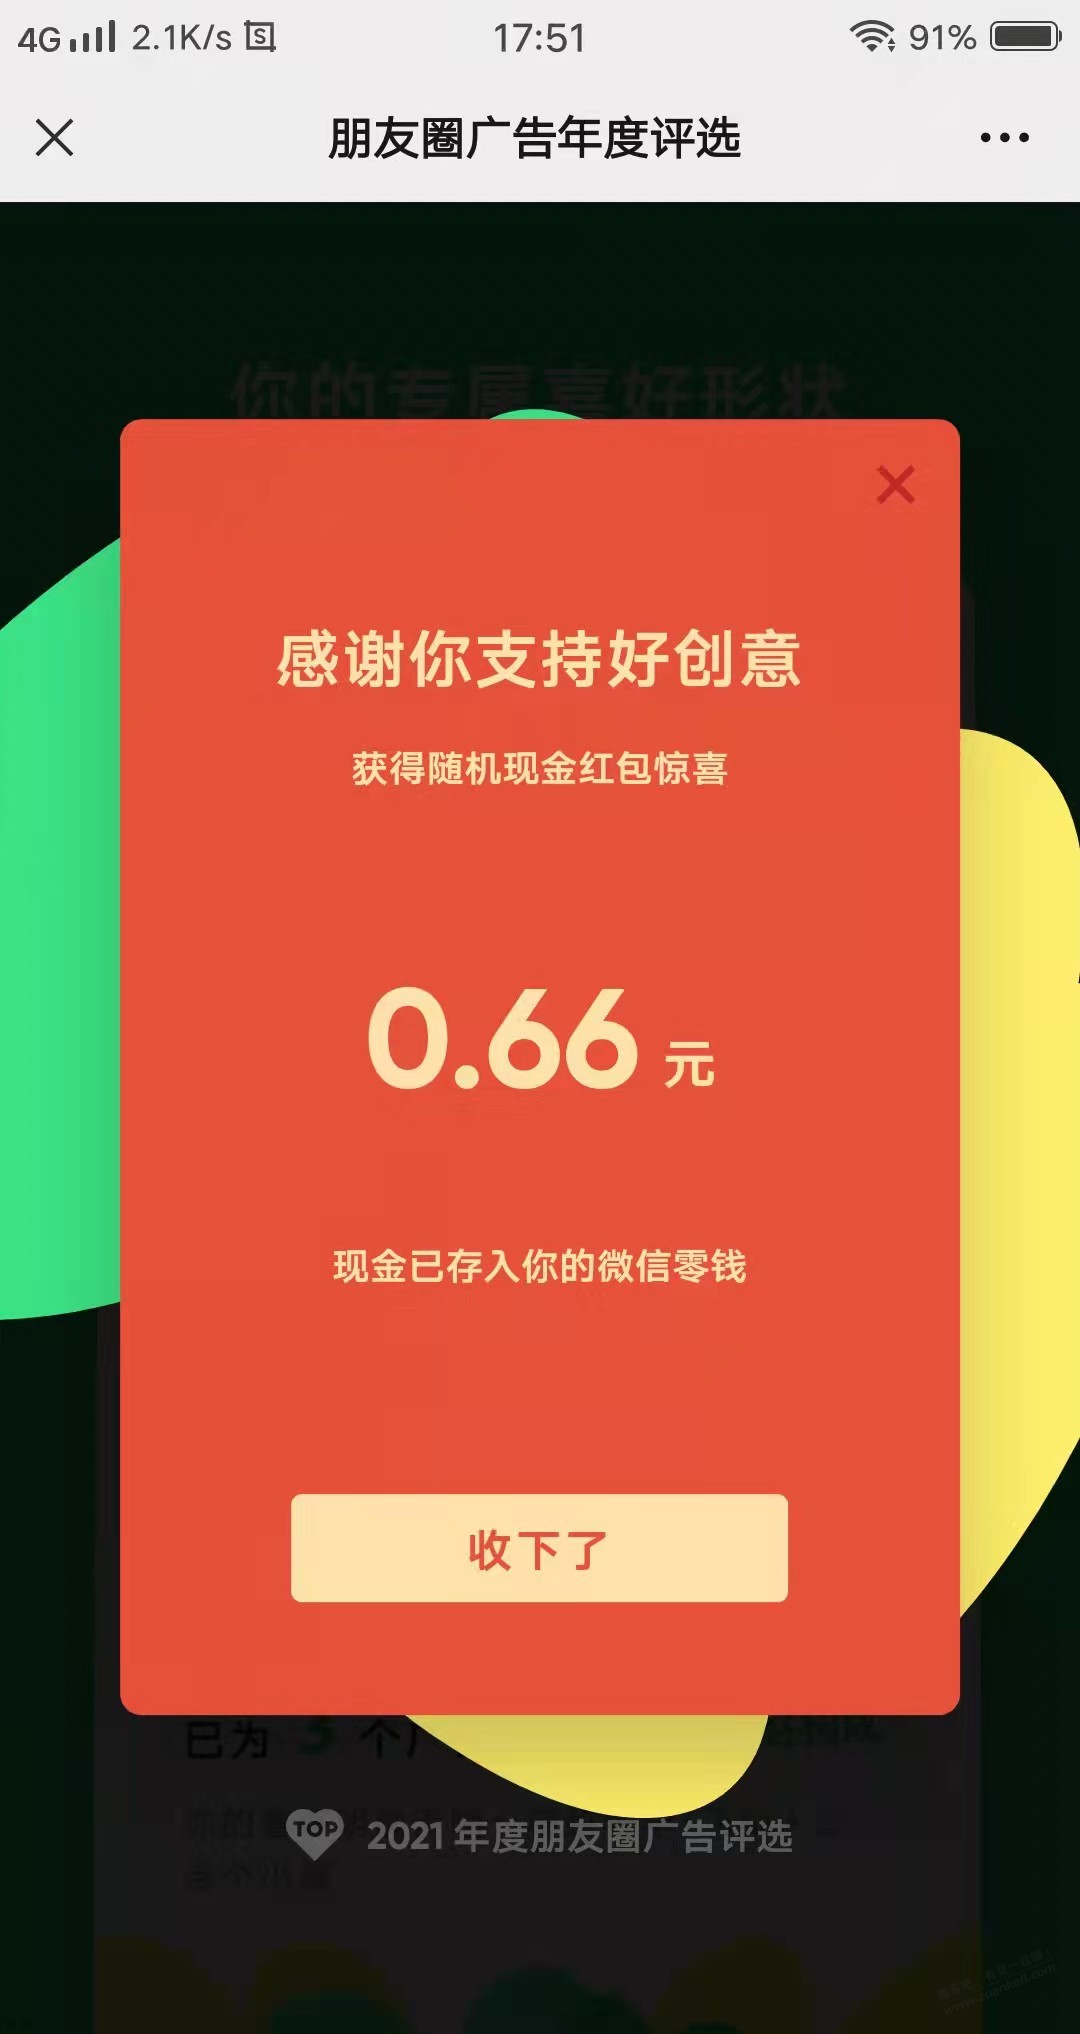 线报-「零钱入账」V.x朋友圈广告投票-概率红包-惠小助(52huixz.com)